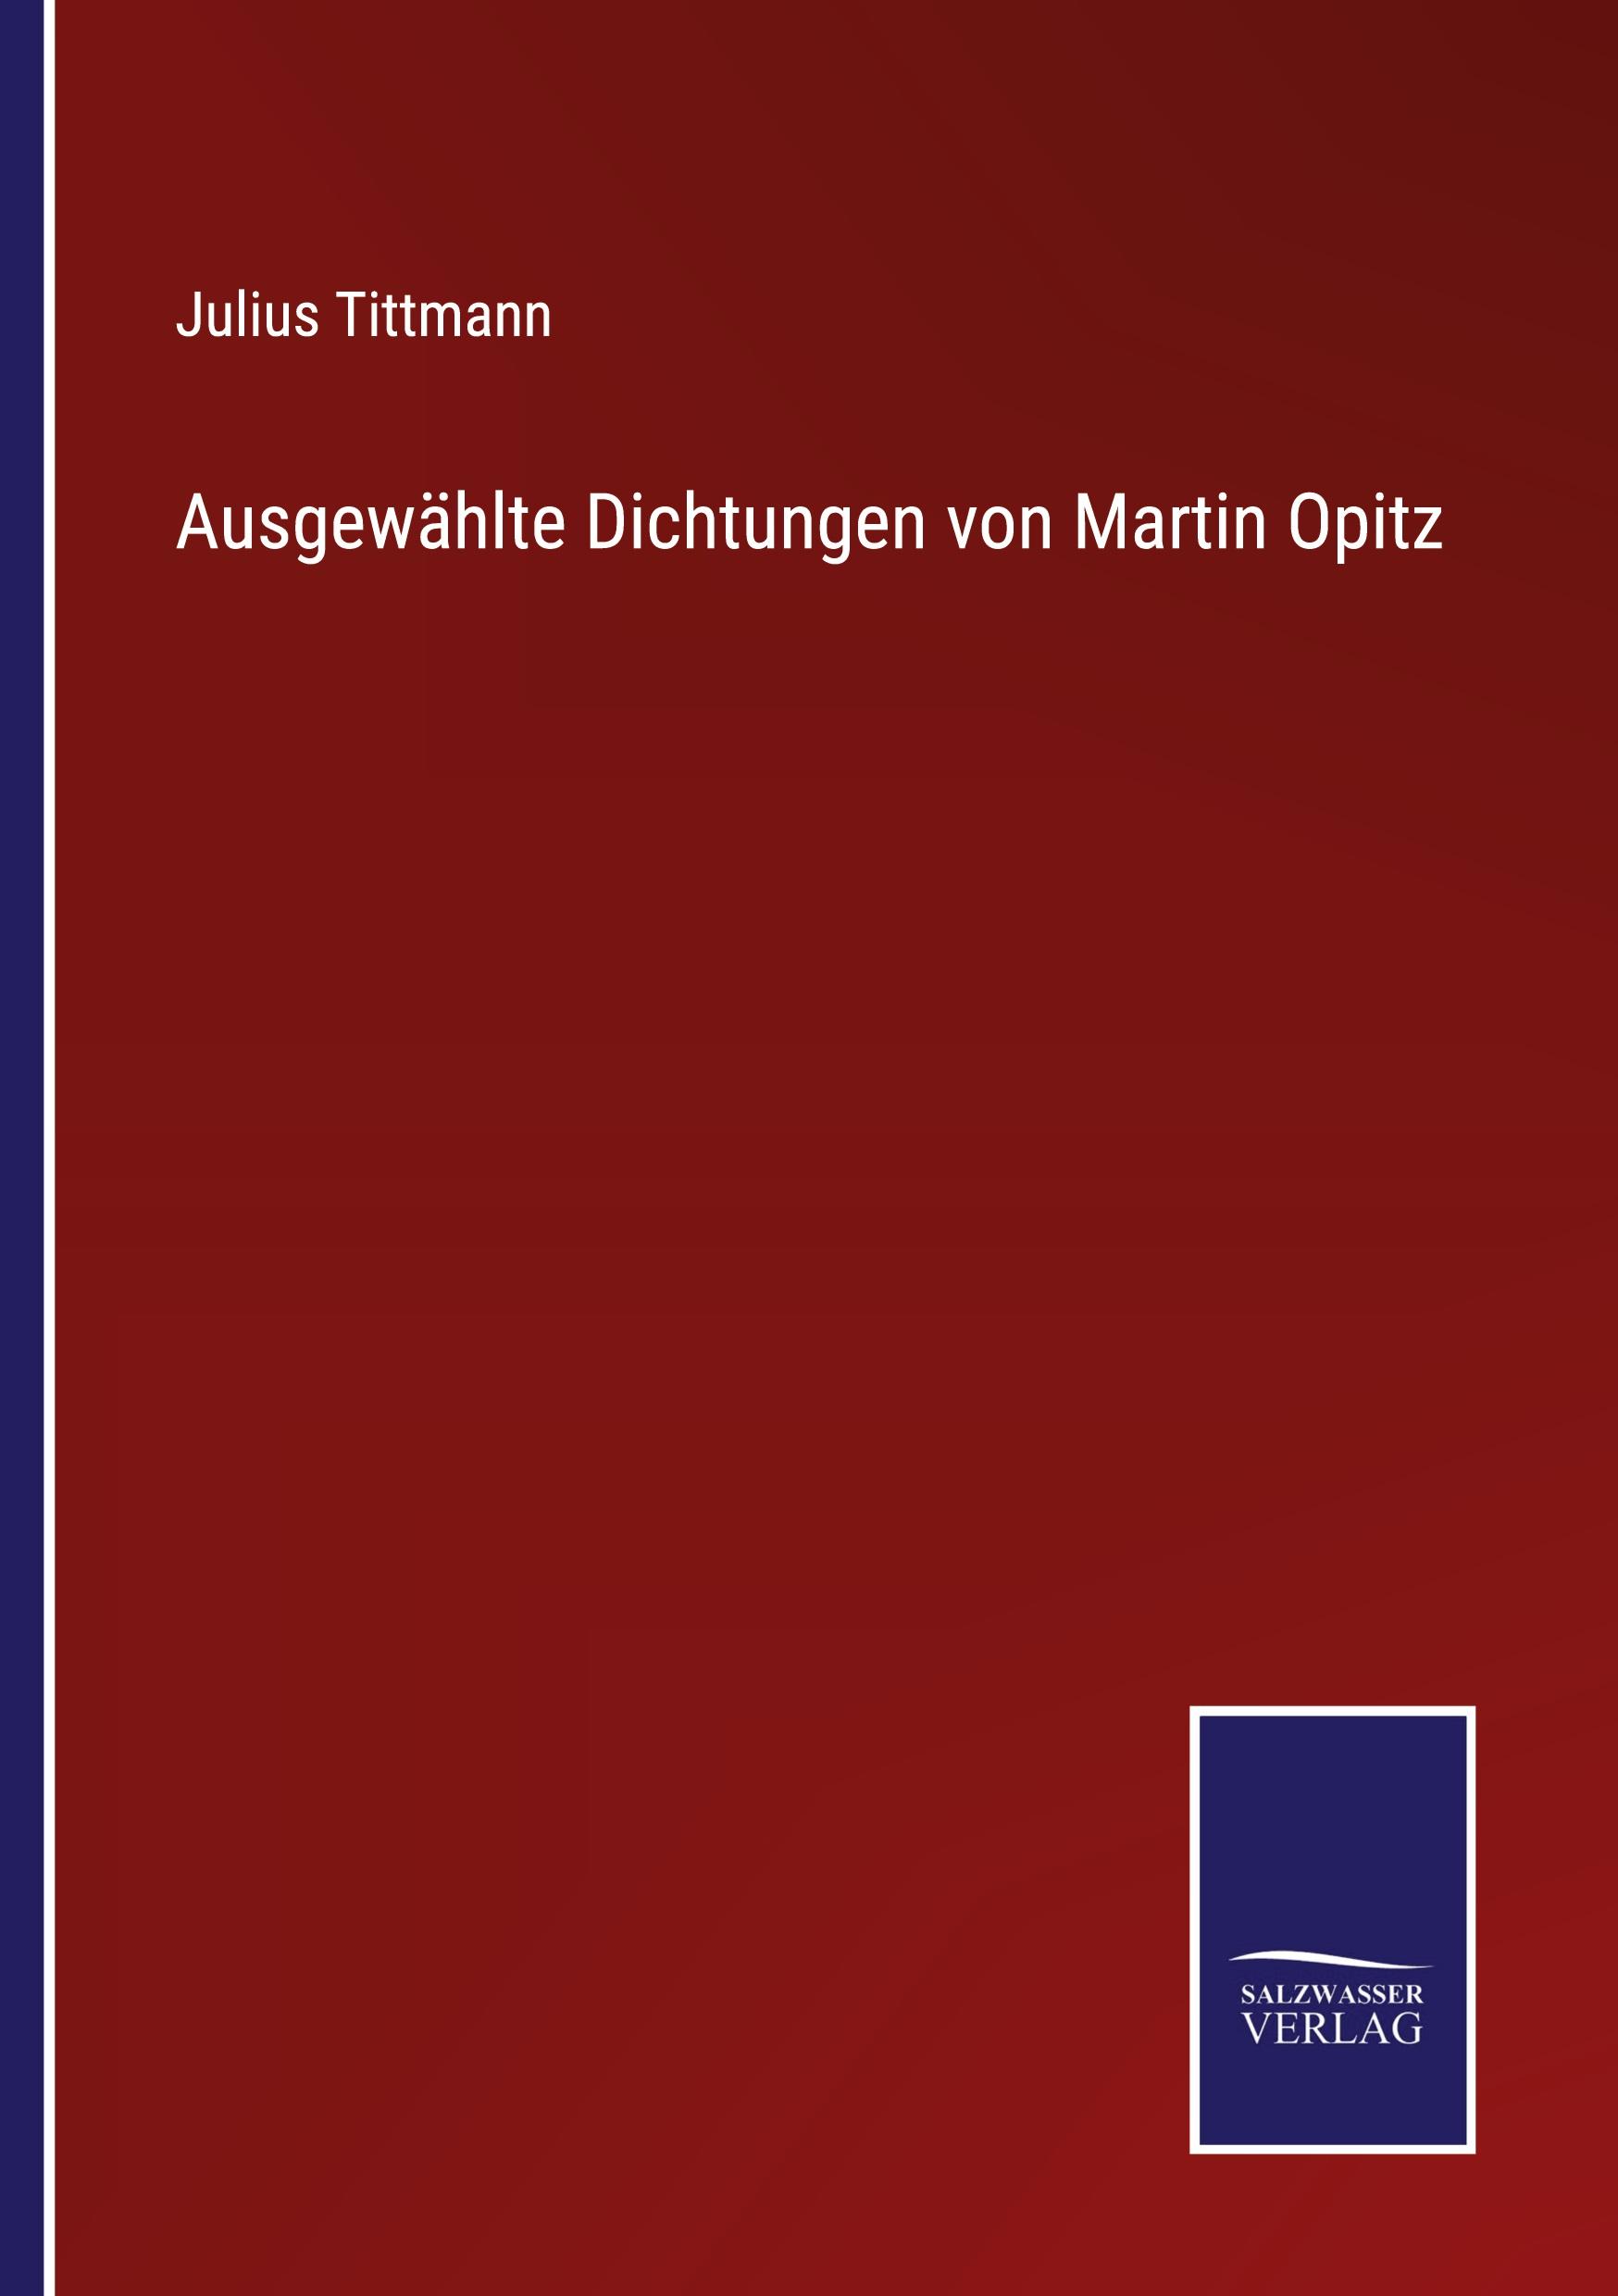 Ausgewaehlte Dichtungen von Martin Opitz - Tittmann, Julius